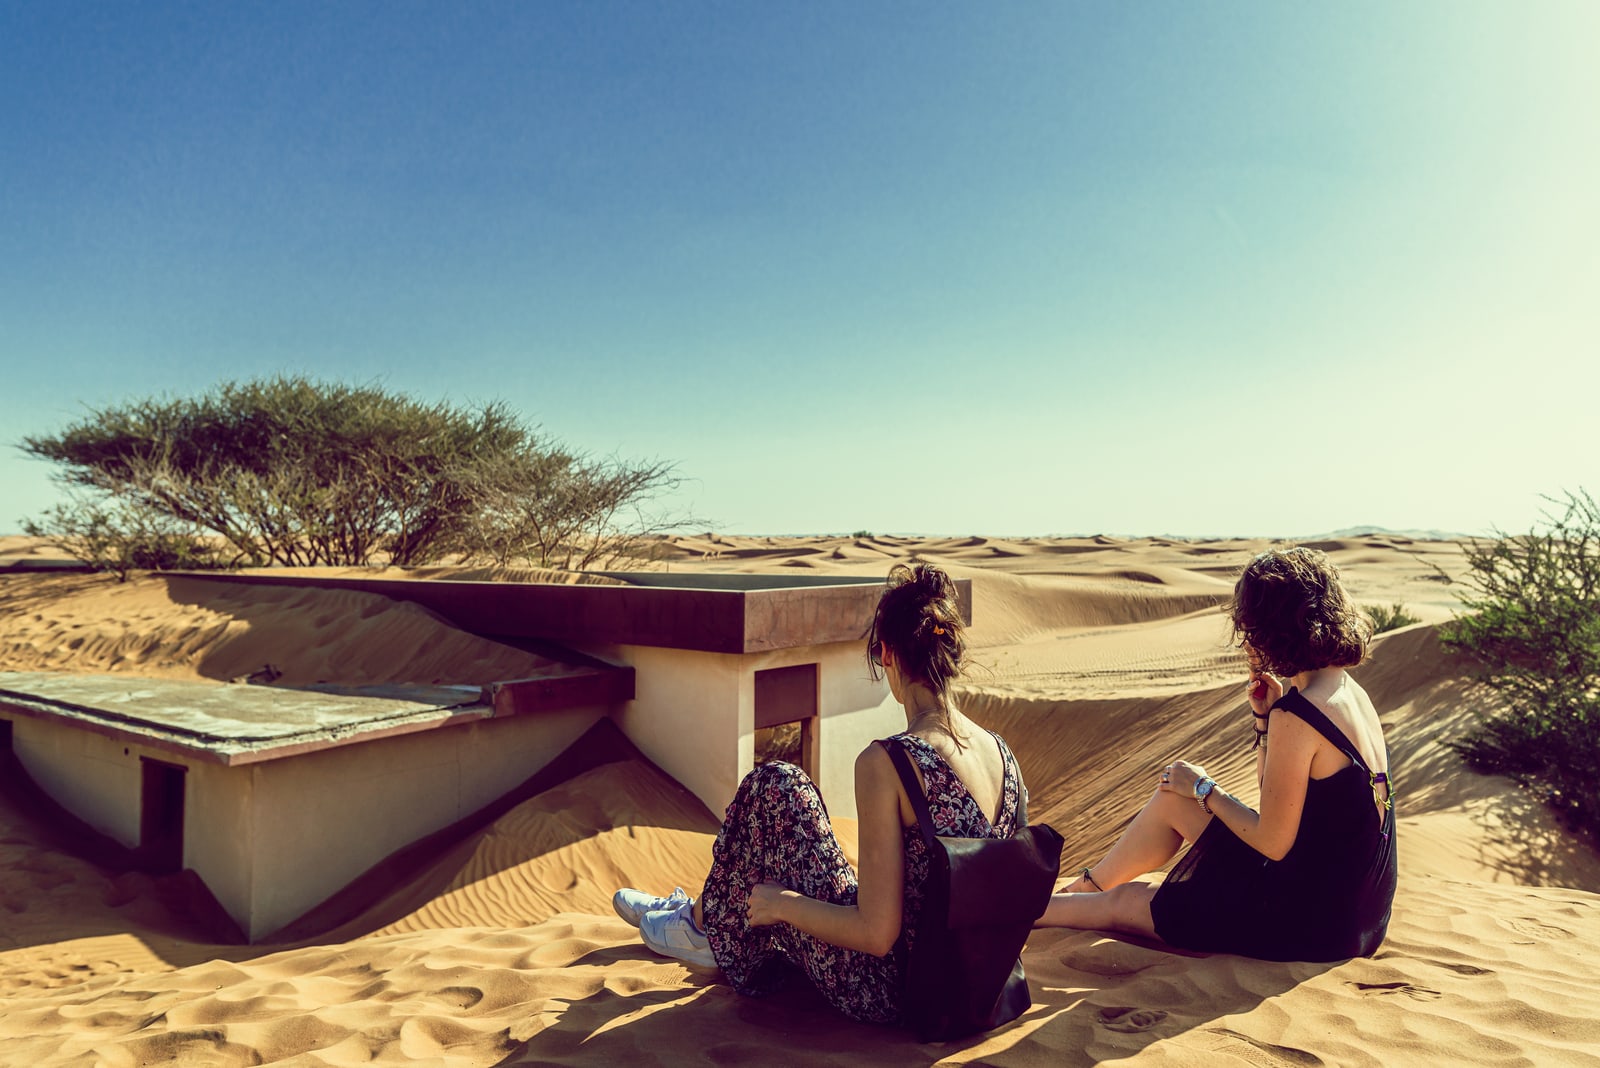 due donne amiche sedute nel deserto